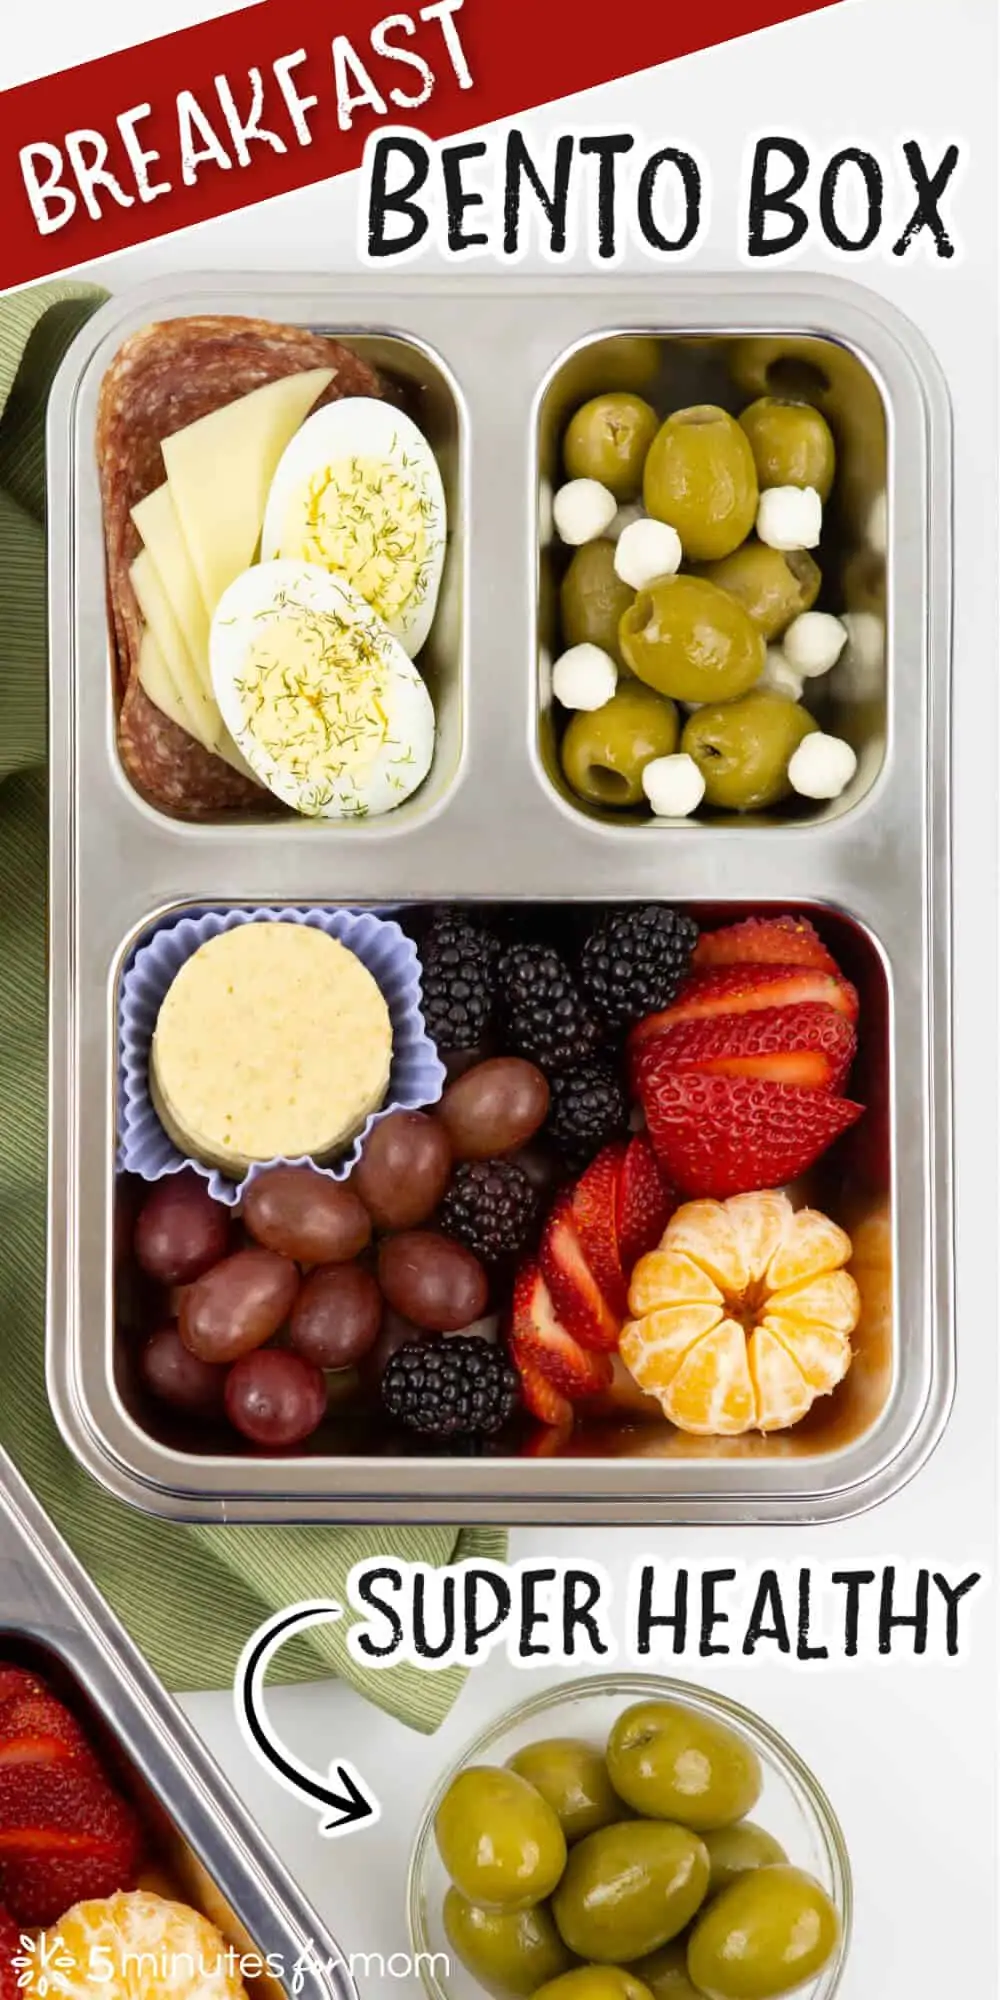 Breakfast Bento Box - Super Healthy